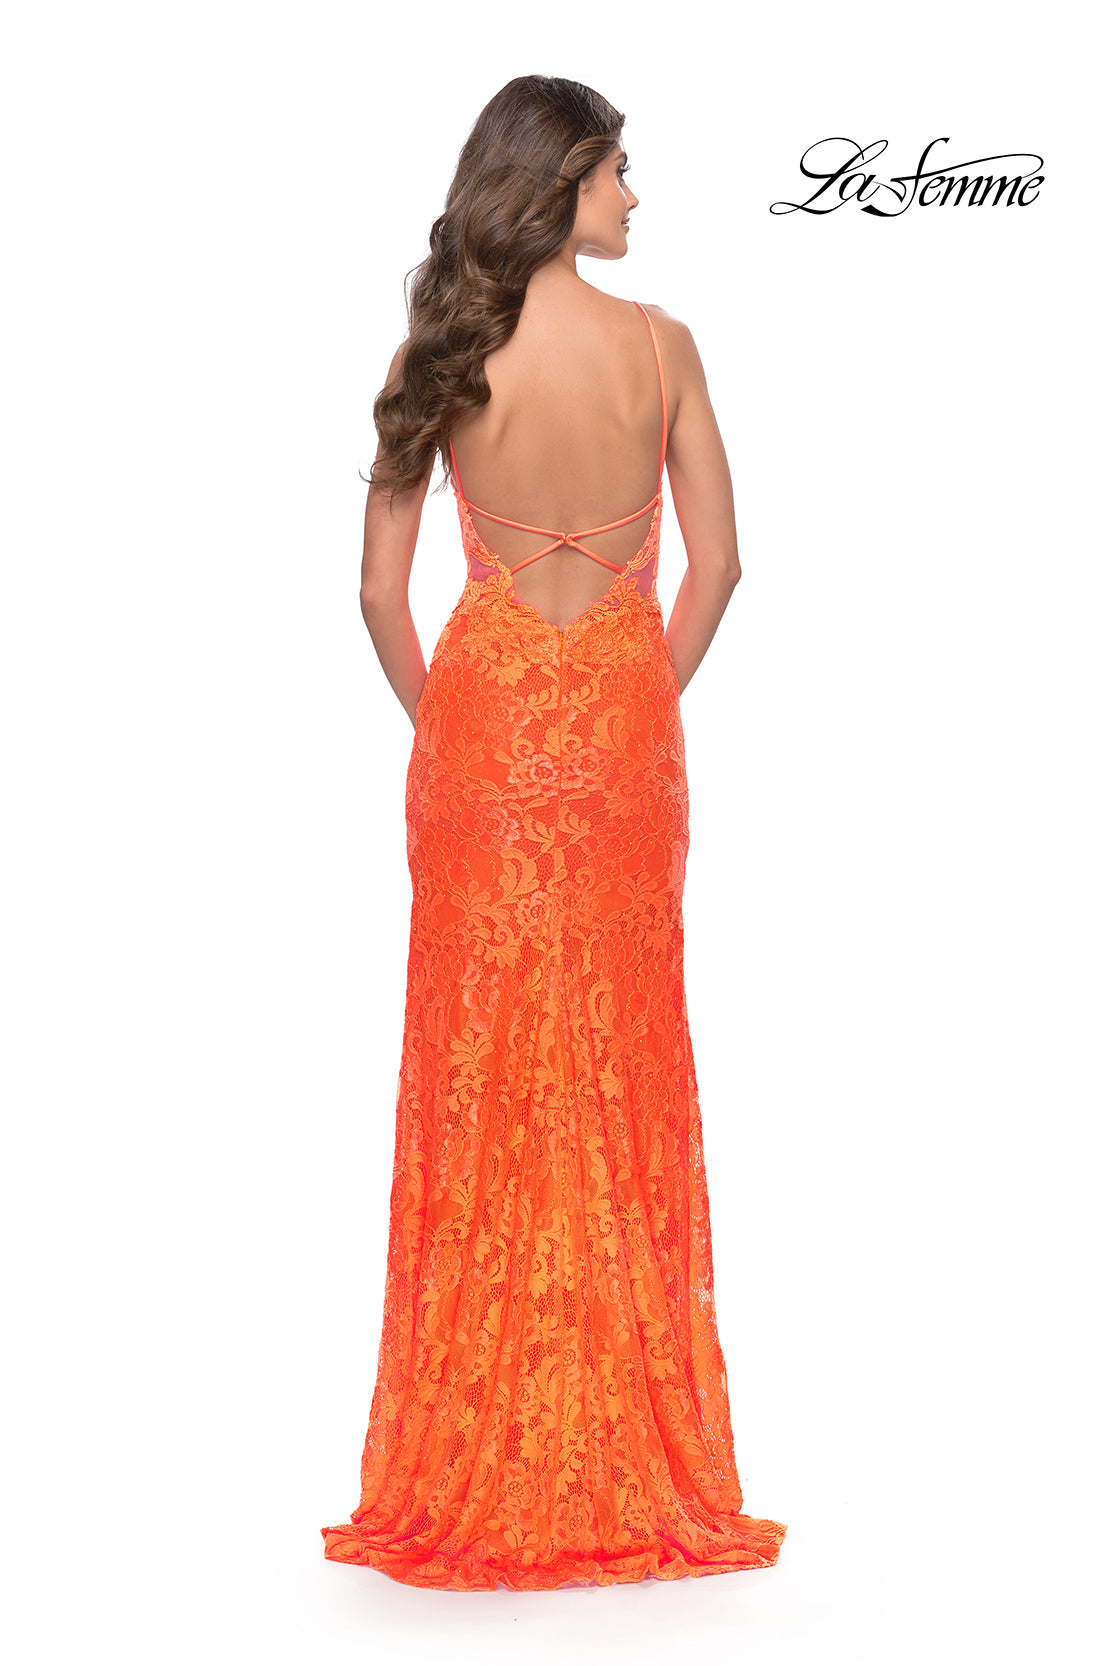 La Femme Open-Back Long Neon Lace Prom Dress